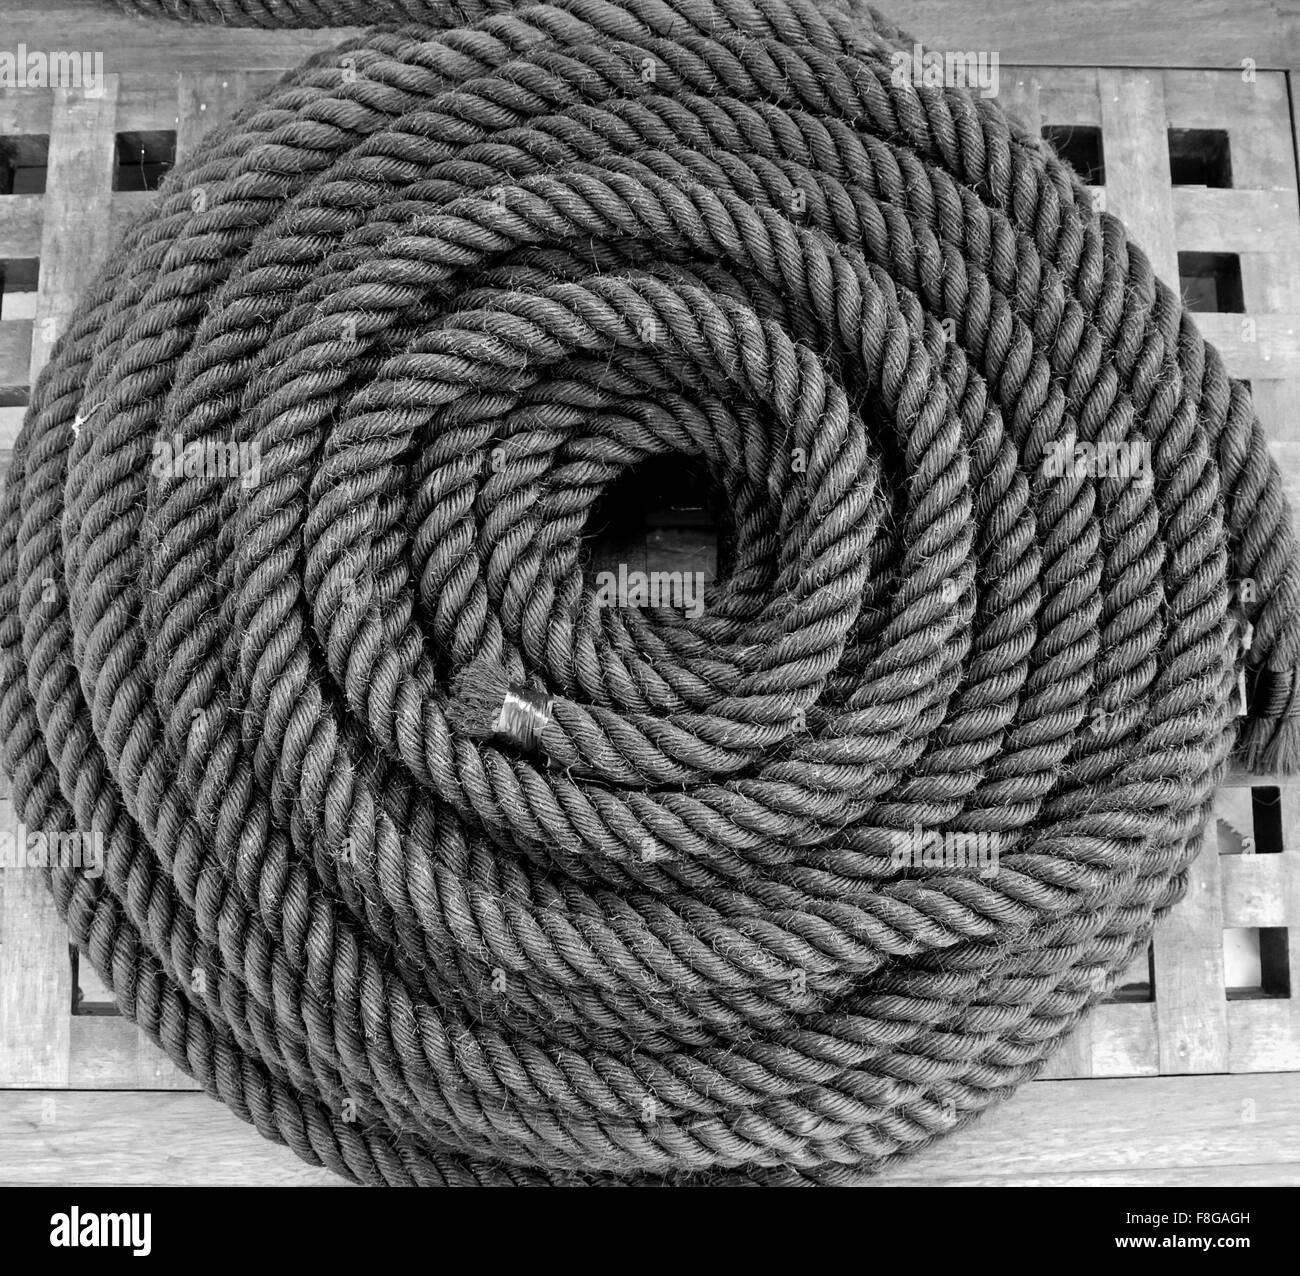 Cuerda negra en espiral foto de archivo. Imagen de entretejido